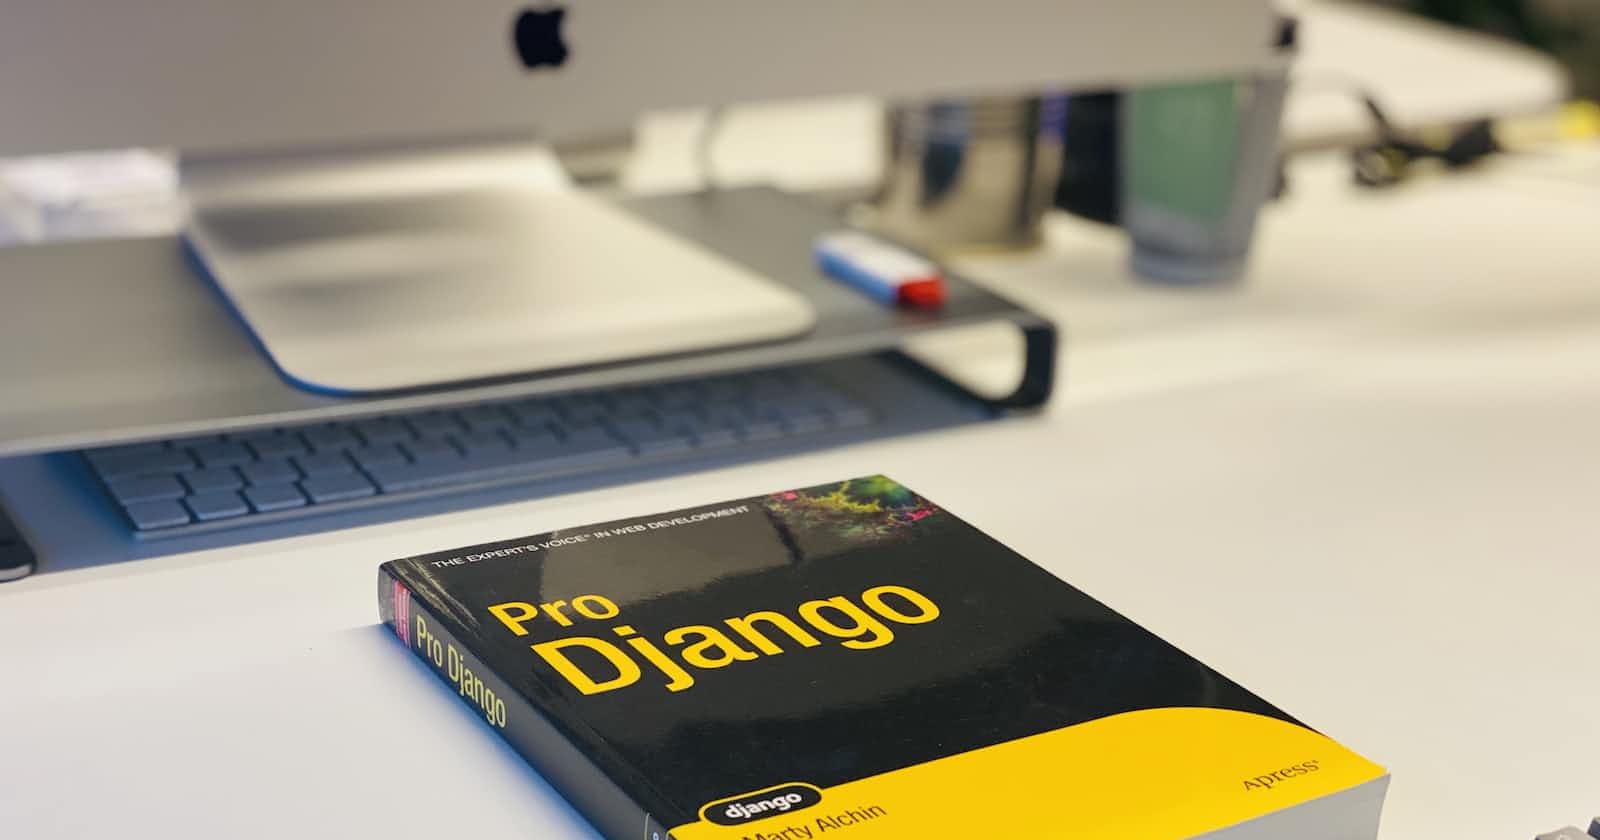 Where to Deploy a Django App